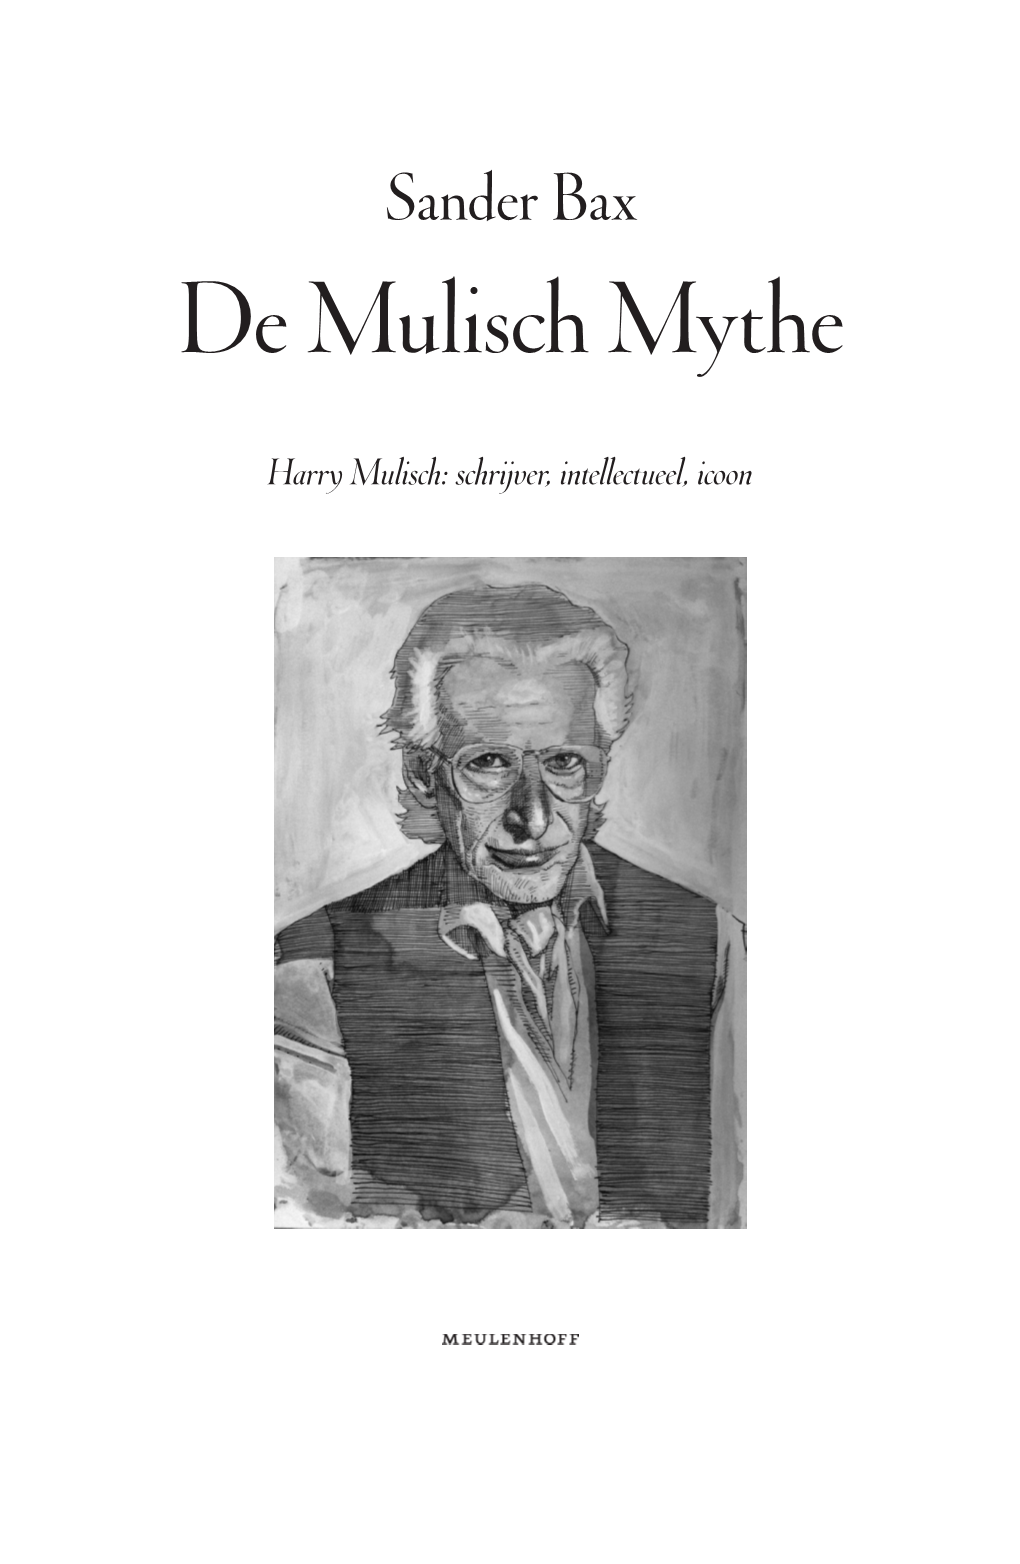 De Mulisch Mythe